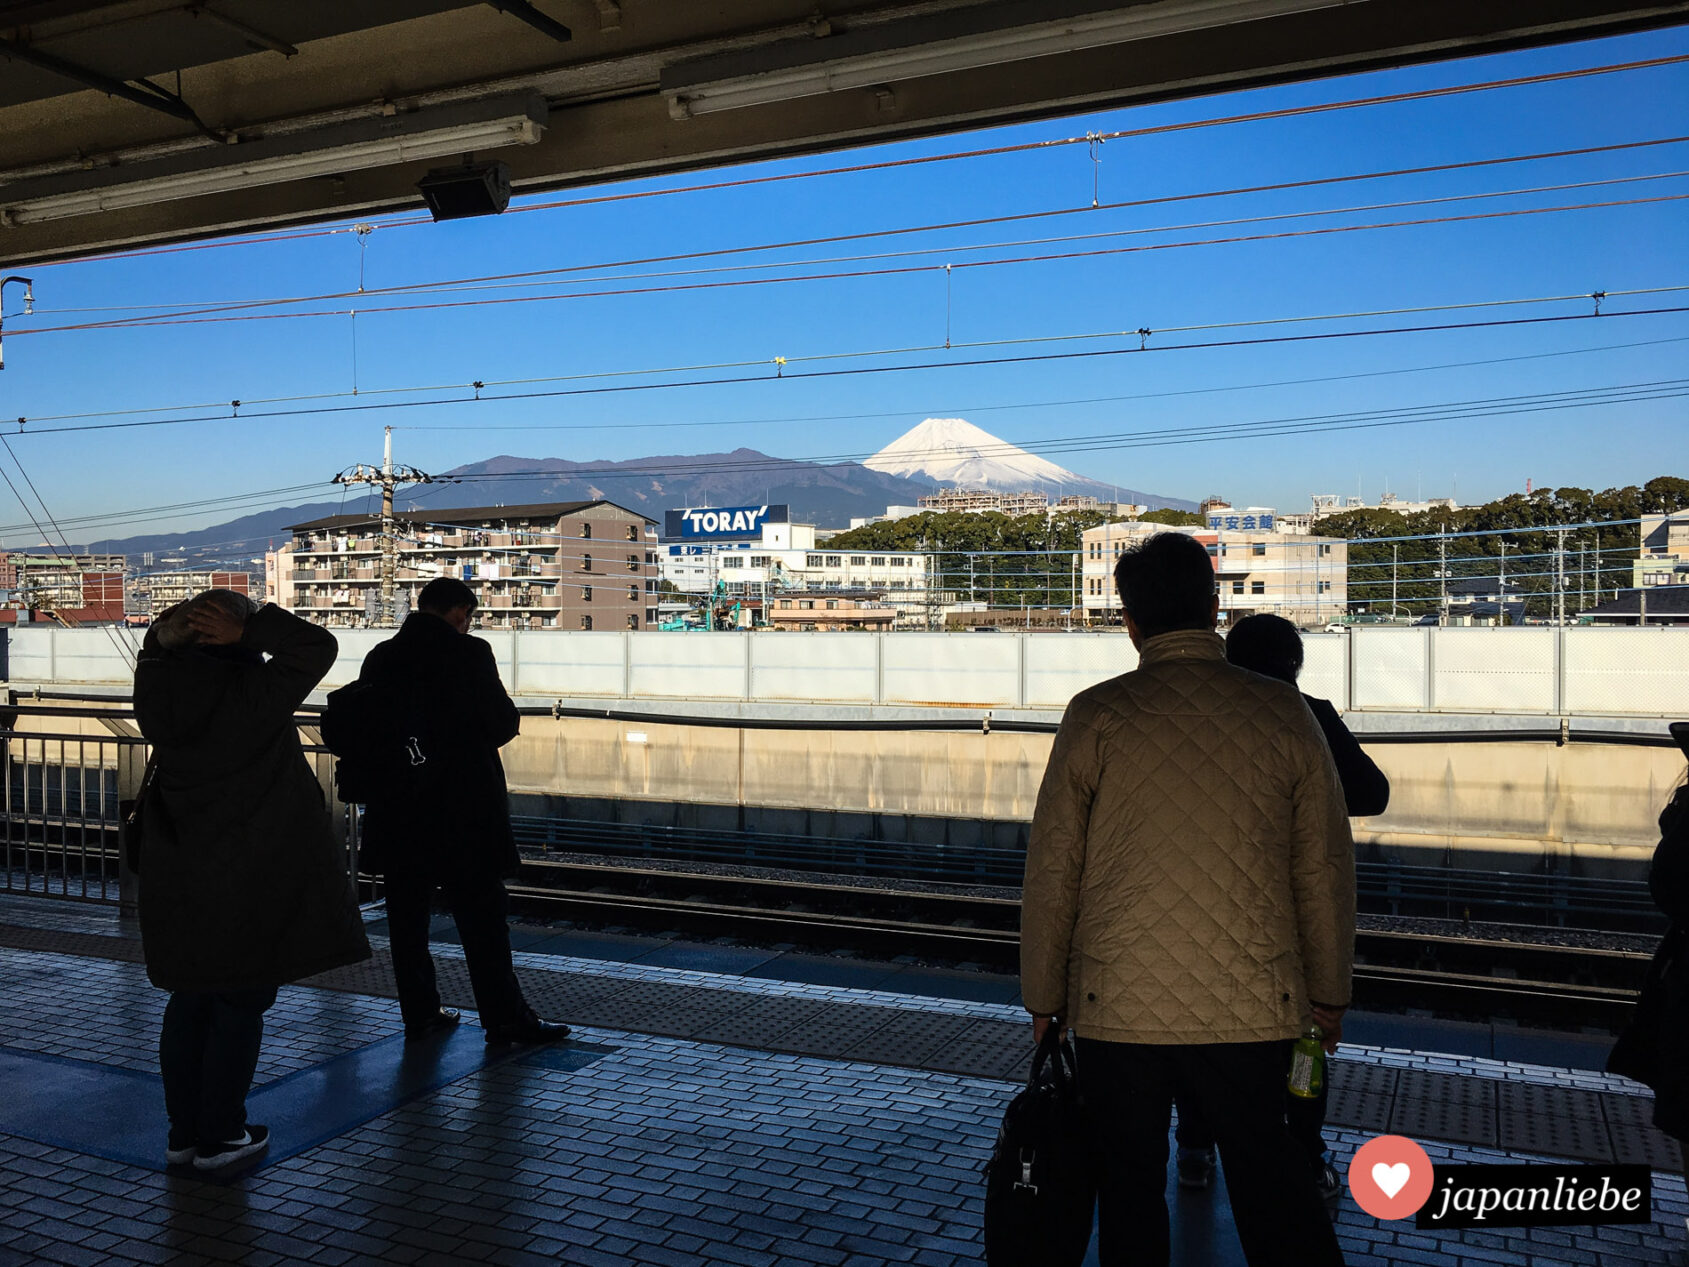 Ausblick auf den Fuji vom Bahnsteig des Bahnhof Mishima.